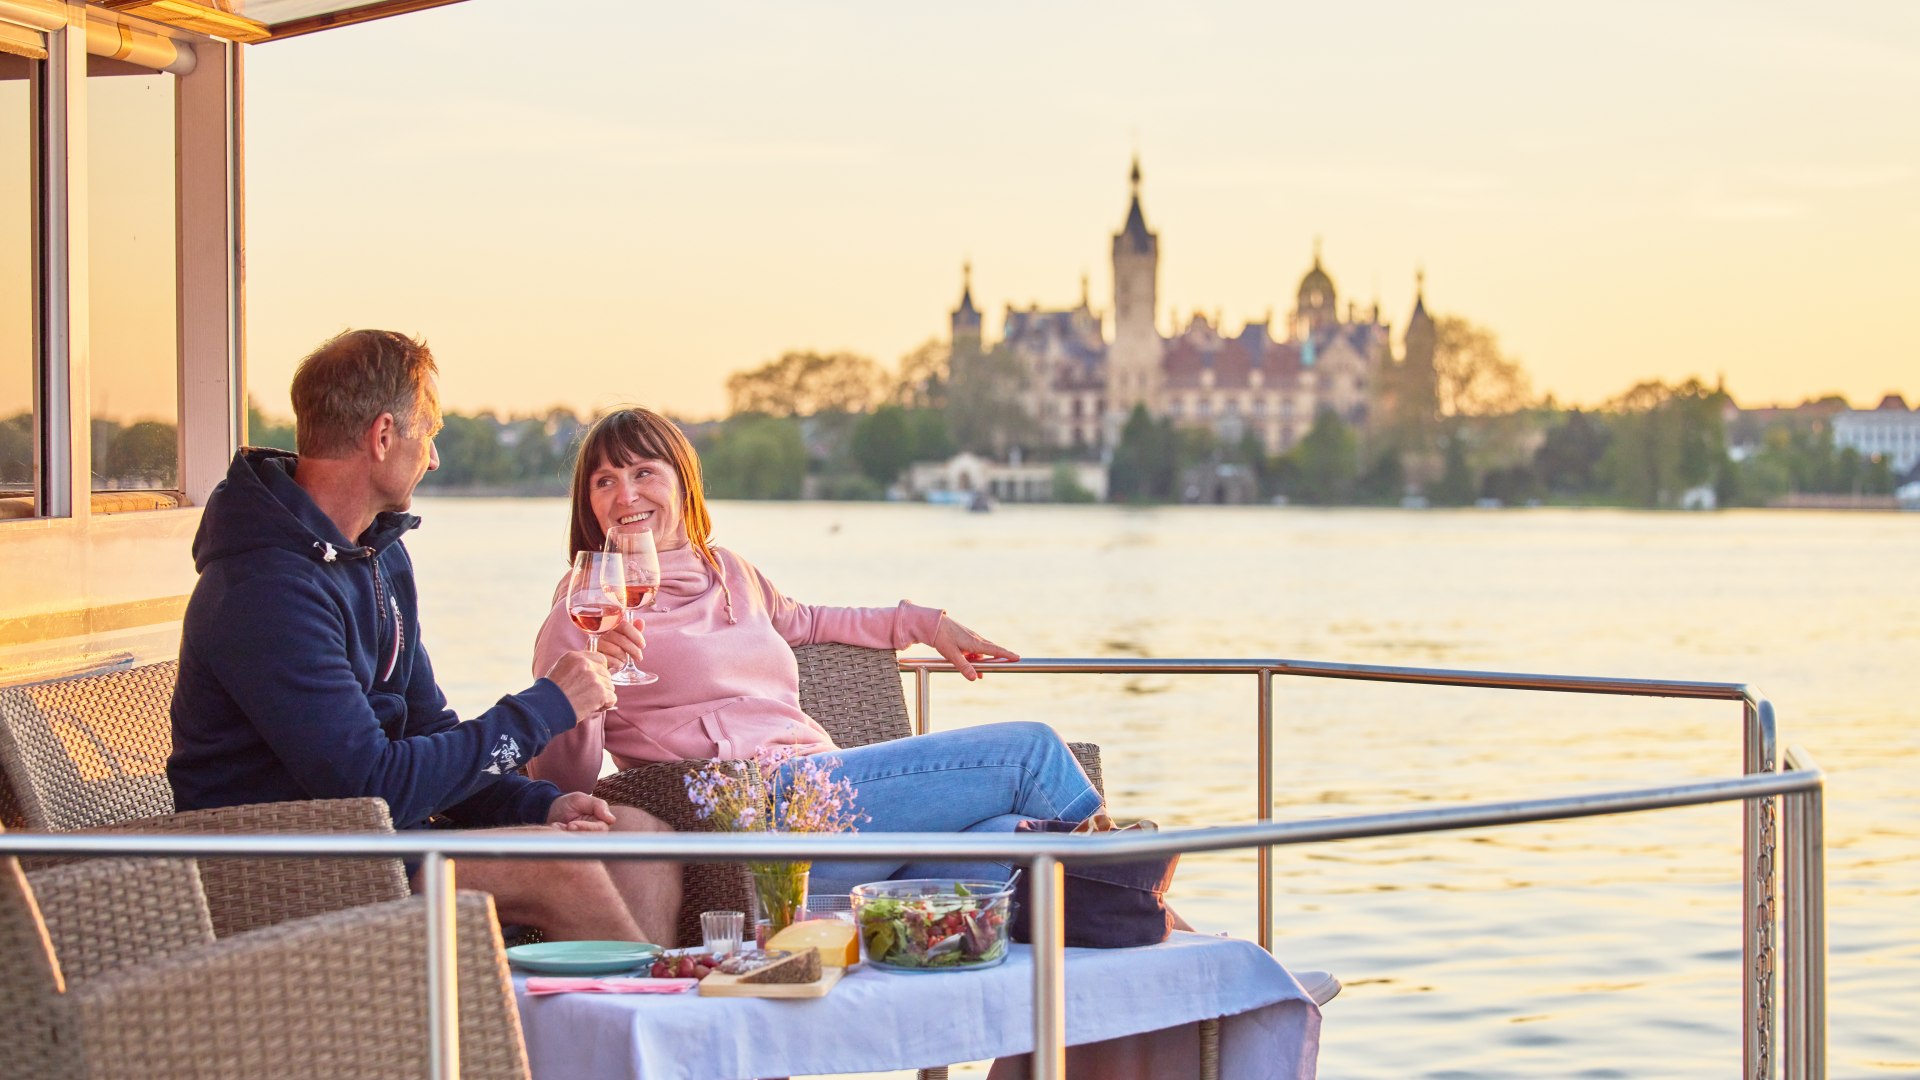 Mit Blick auf die Schlossinsel in Schwerin ein einzigartiges Picknick genießen., © Oliver Borchert